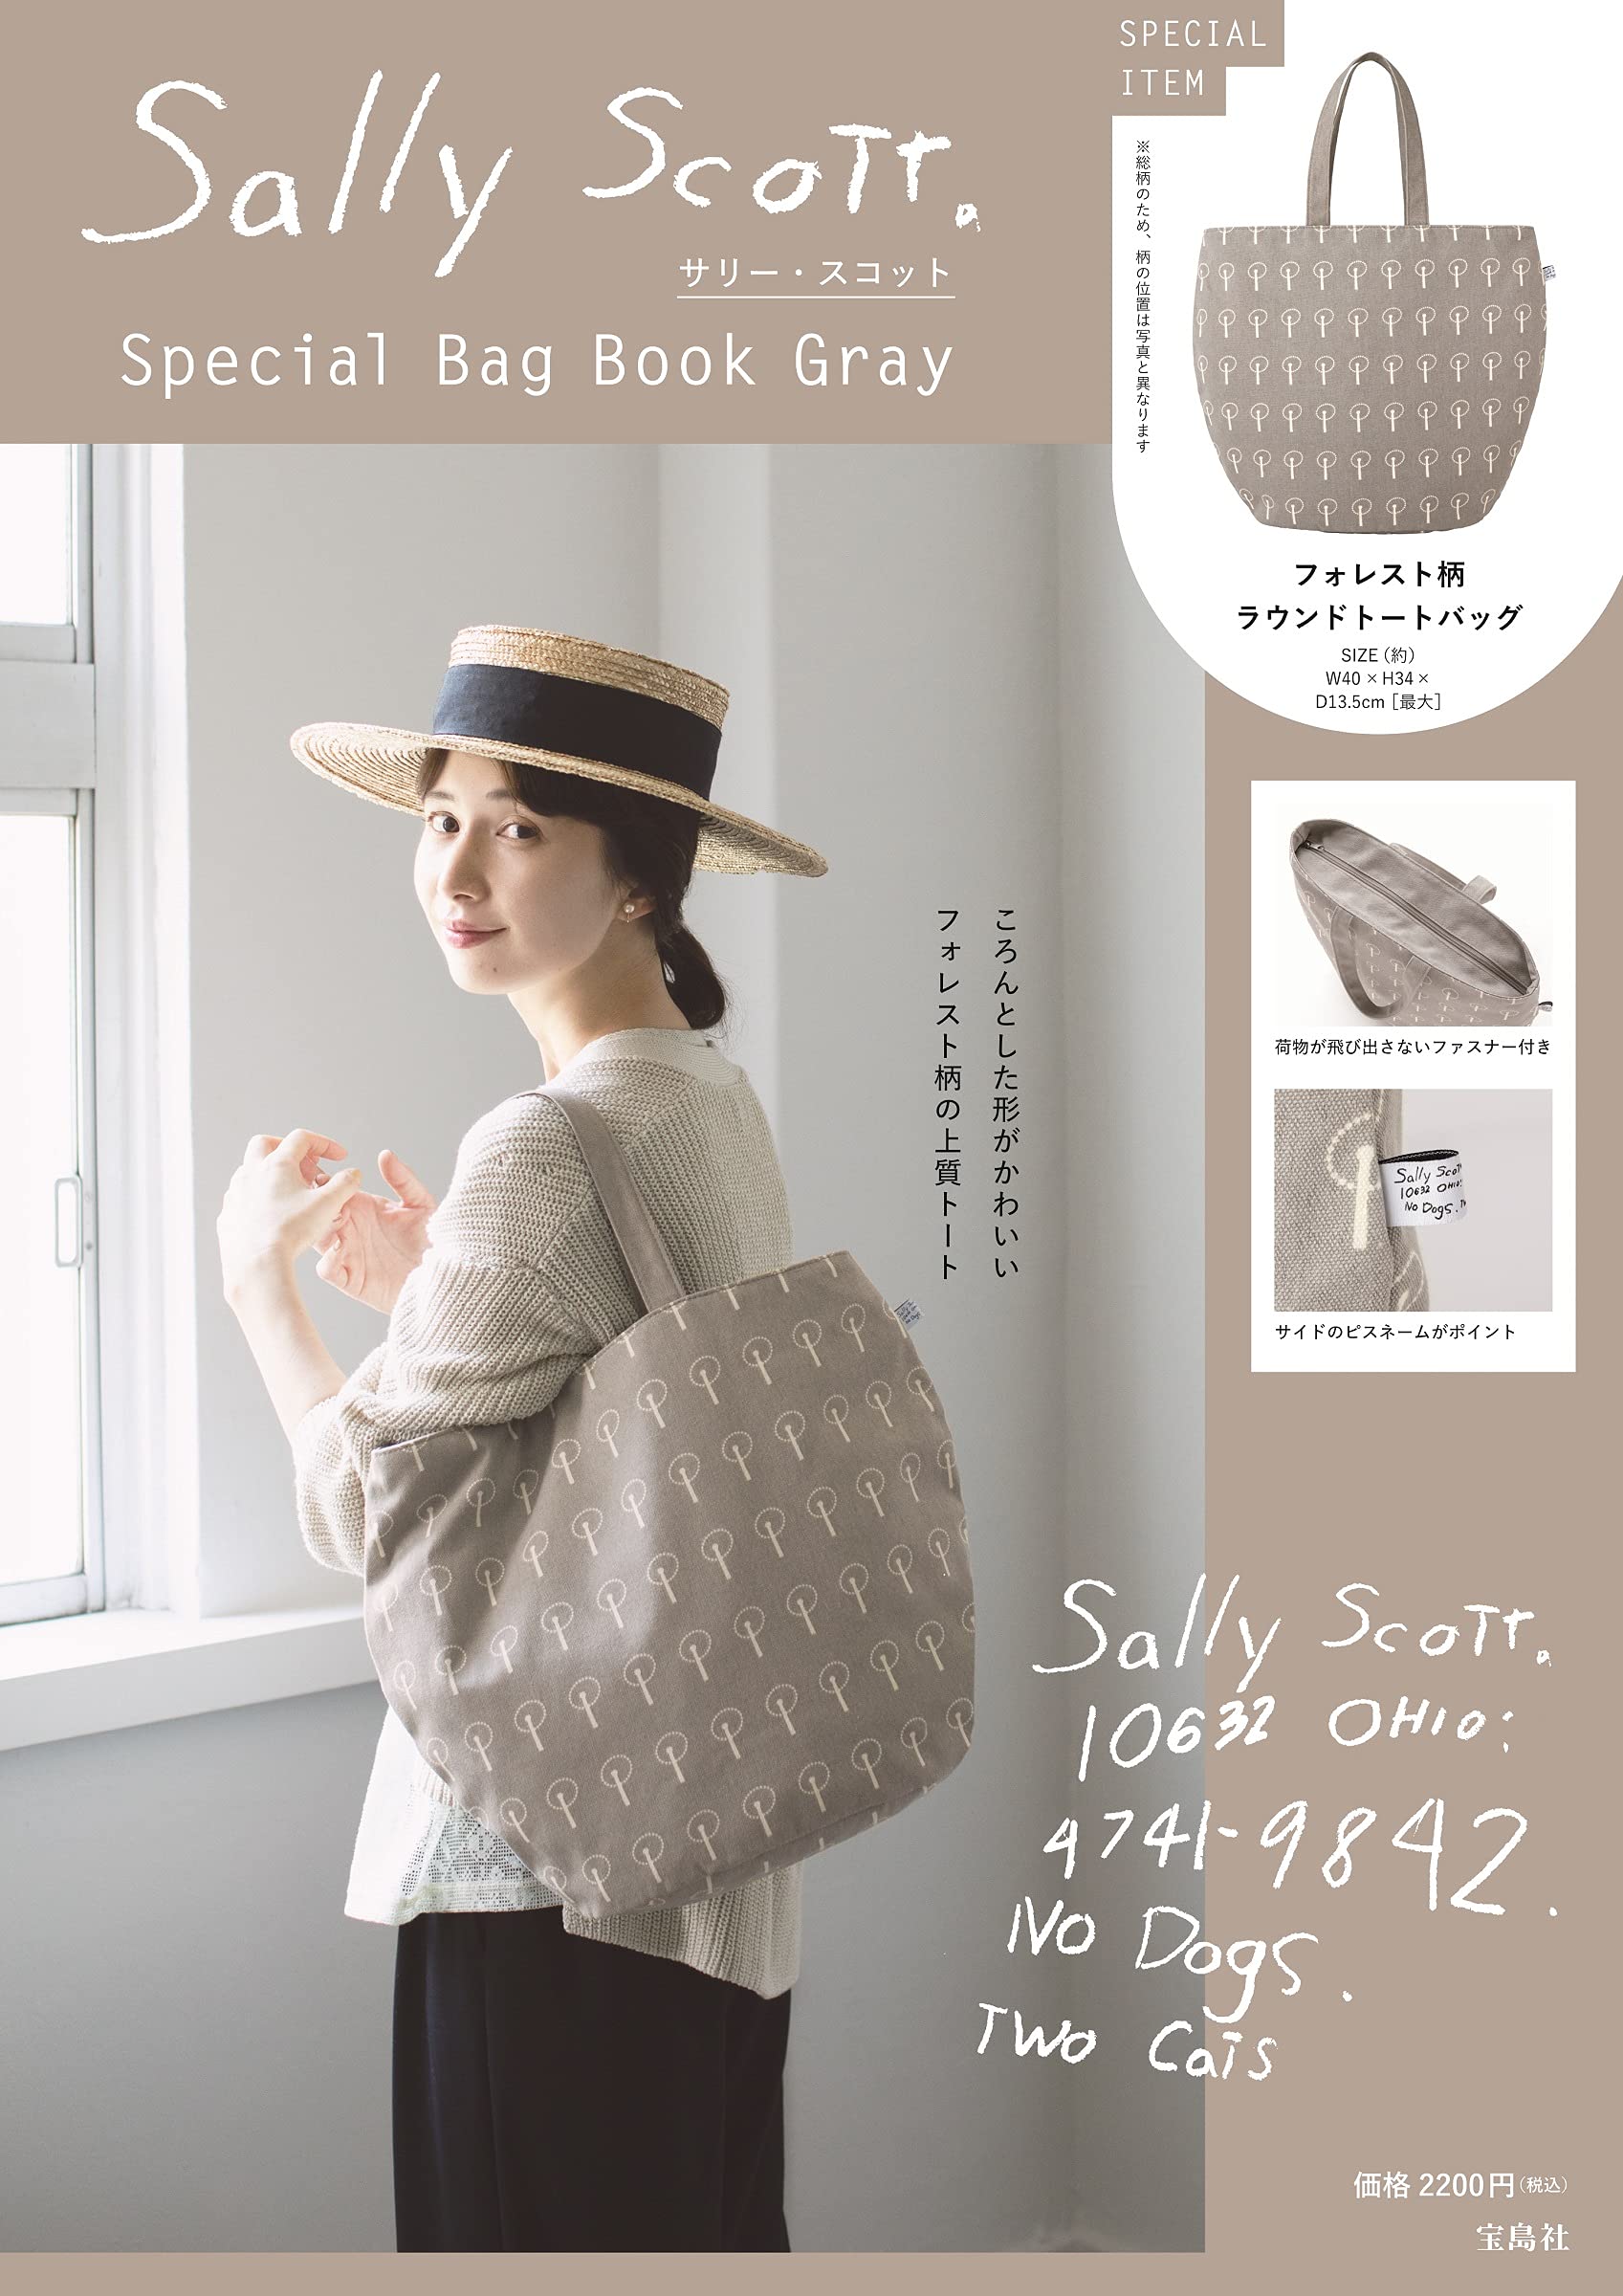 サリ-·スコット Special Bag Book Gray